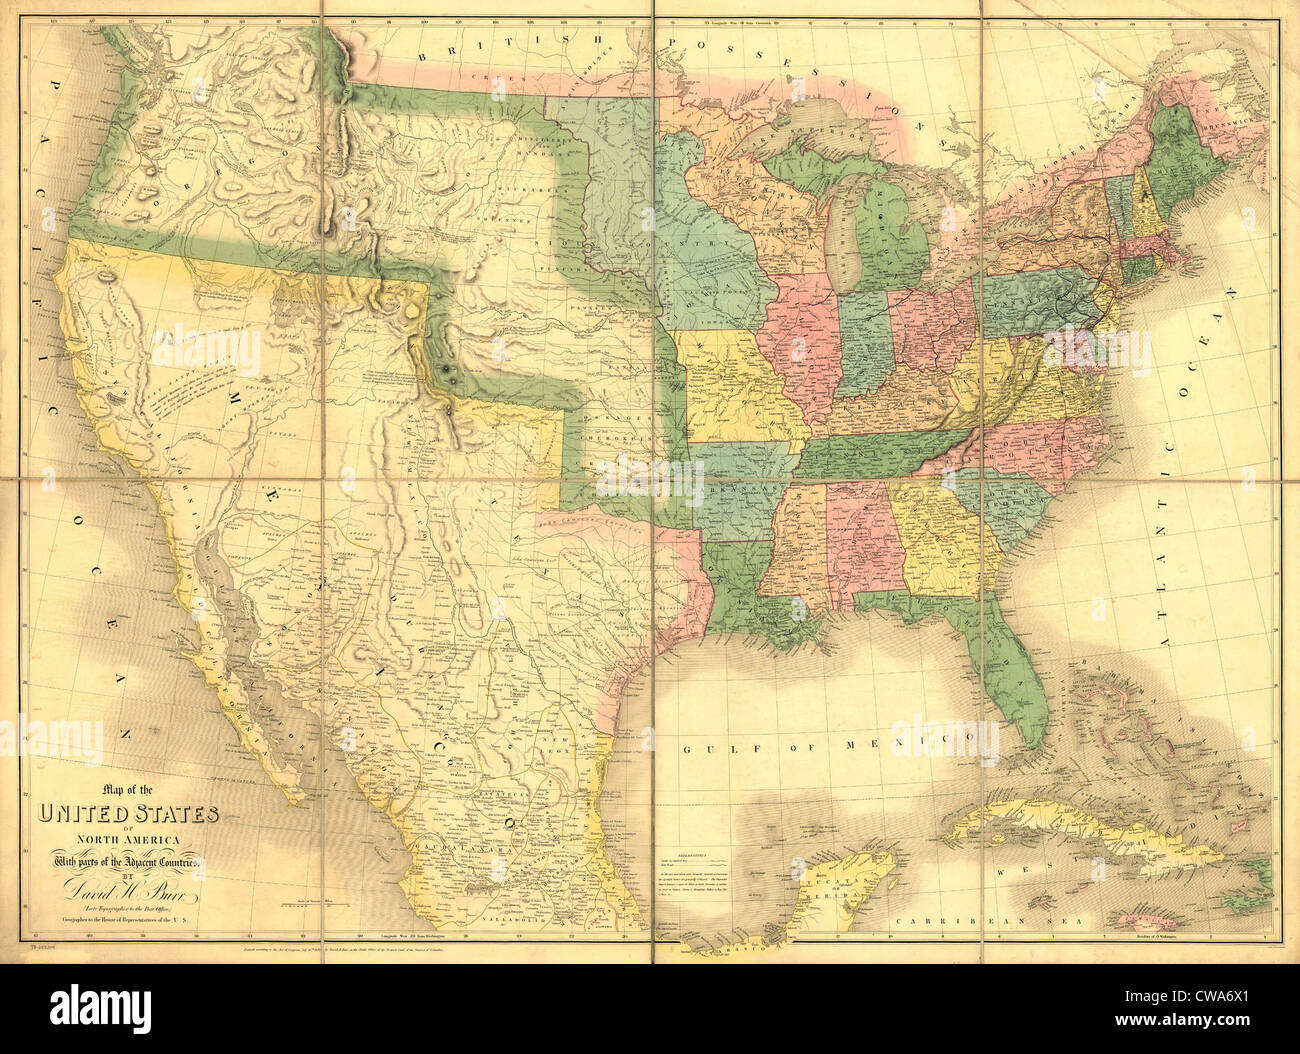 1839 Carte montrant la frontière mexicaine-nous avant la guerre du Mexique et l'annexion de terres qui nous est maintenant de Californie, États-Unis Banque D'Images